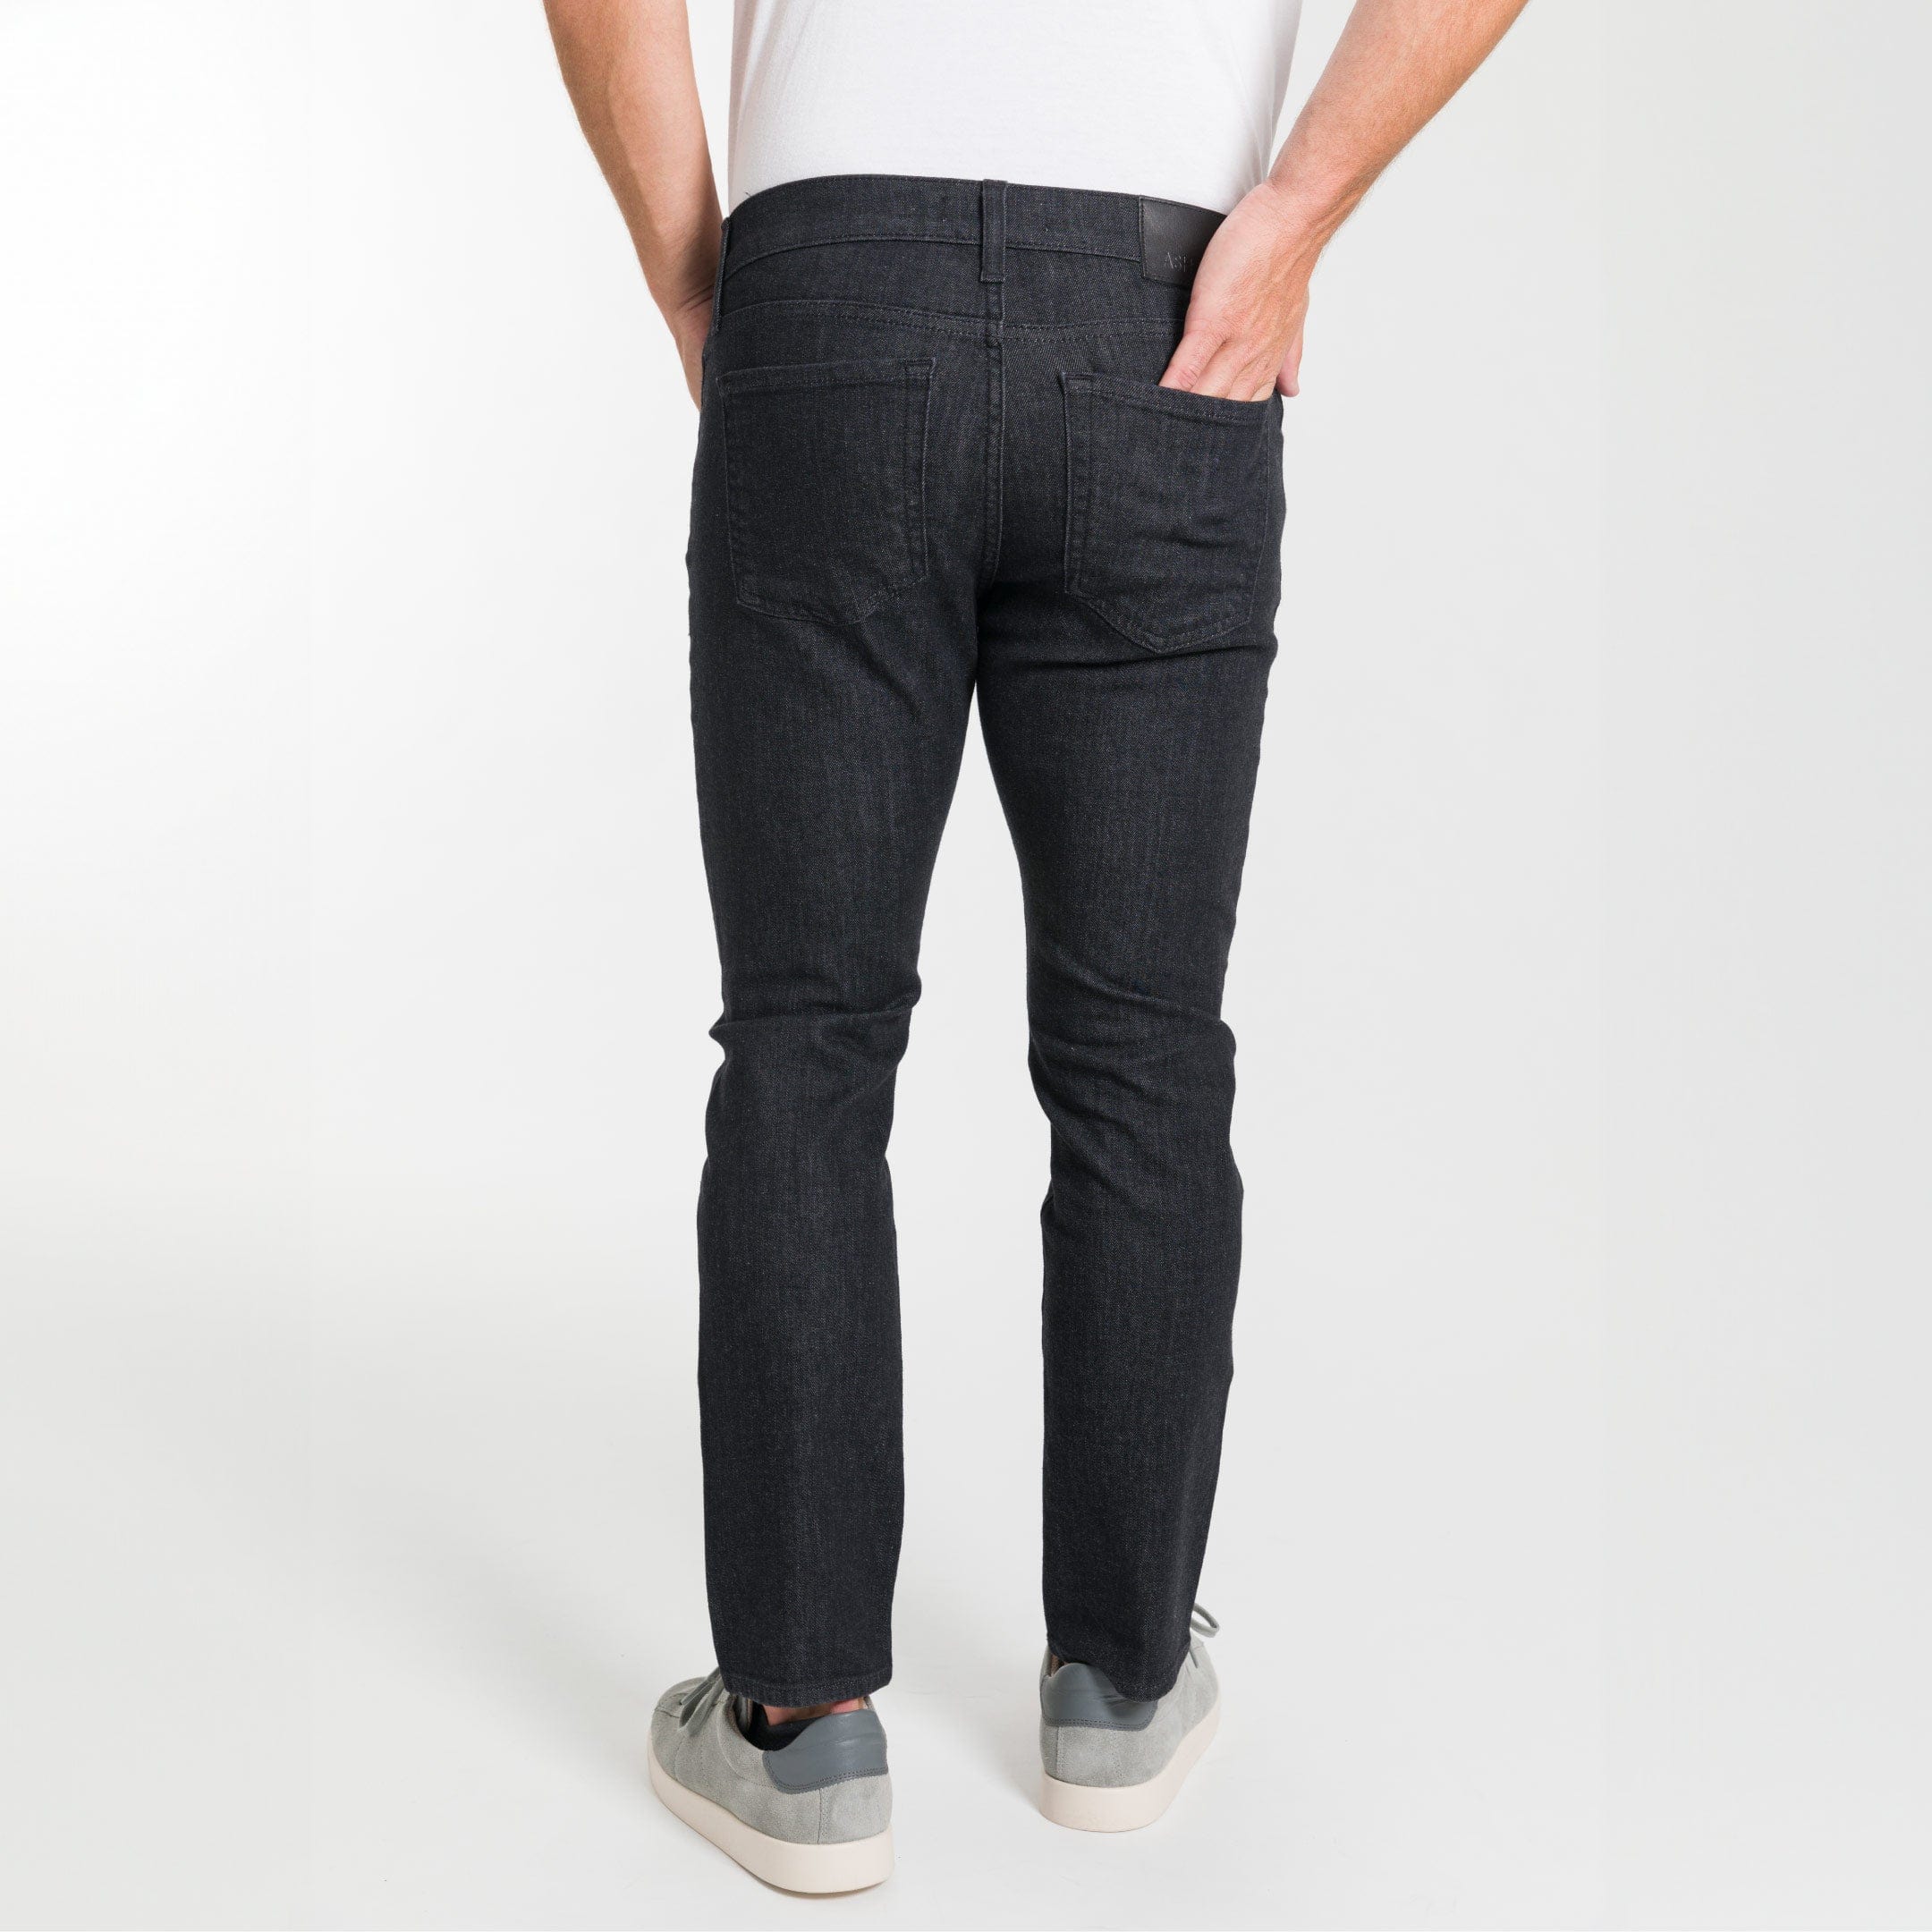 Ash & Erie Asphalt Wash Explorer Jeans for Short Men